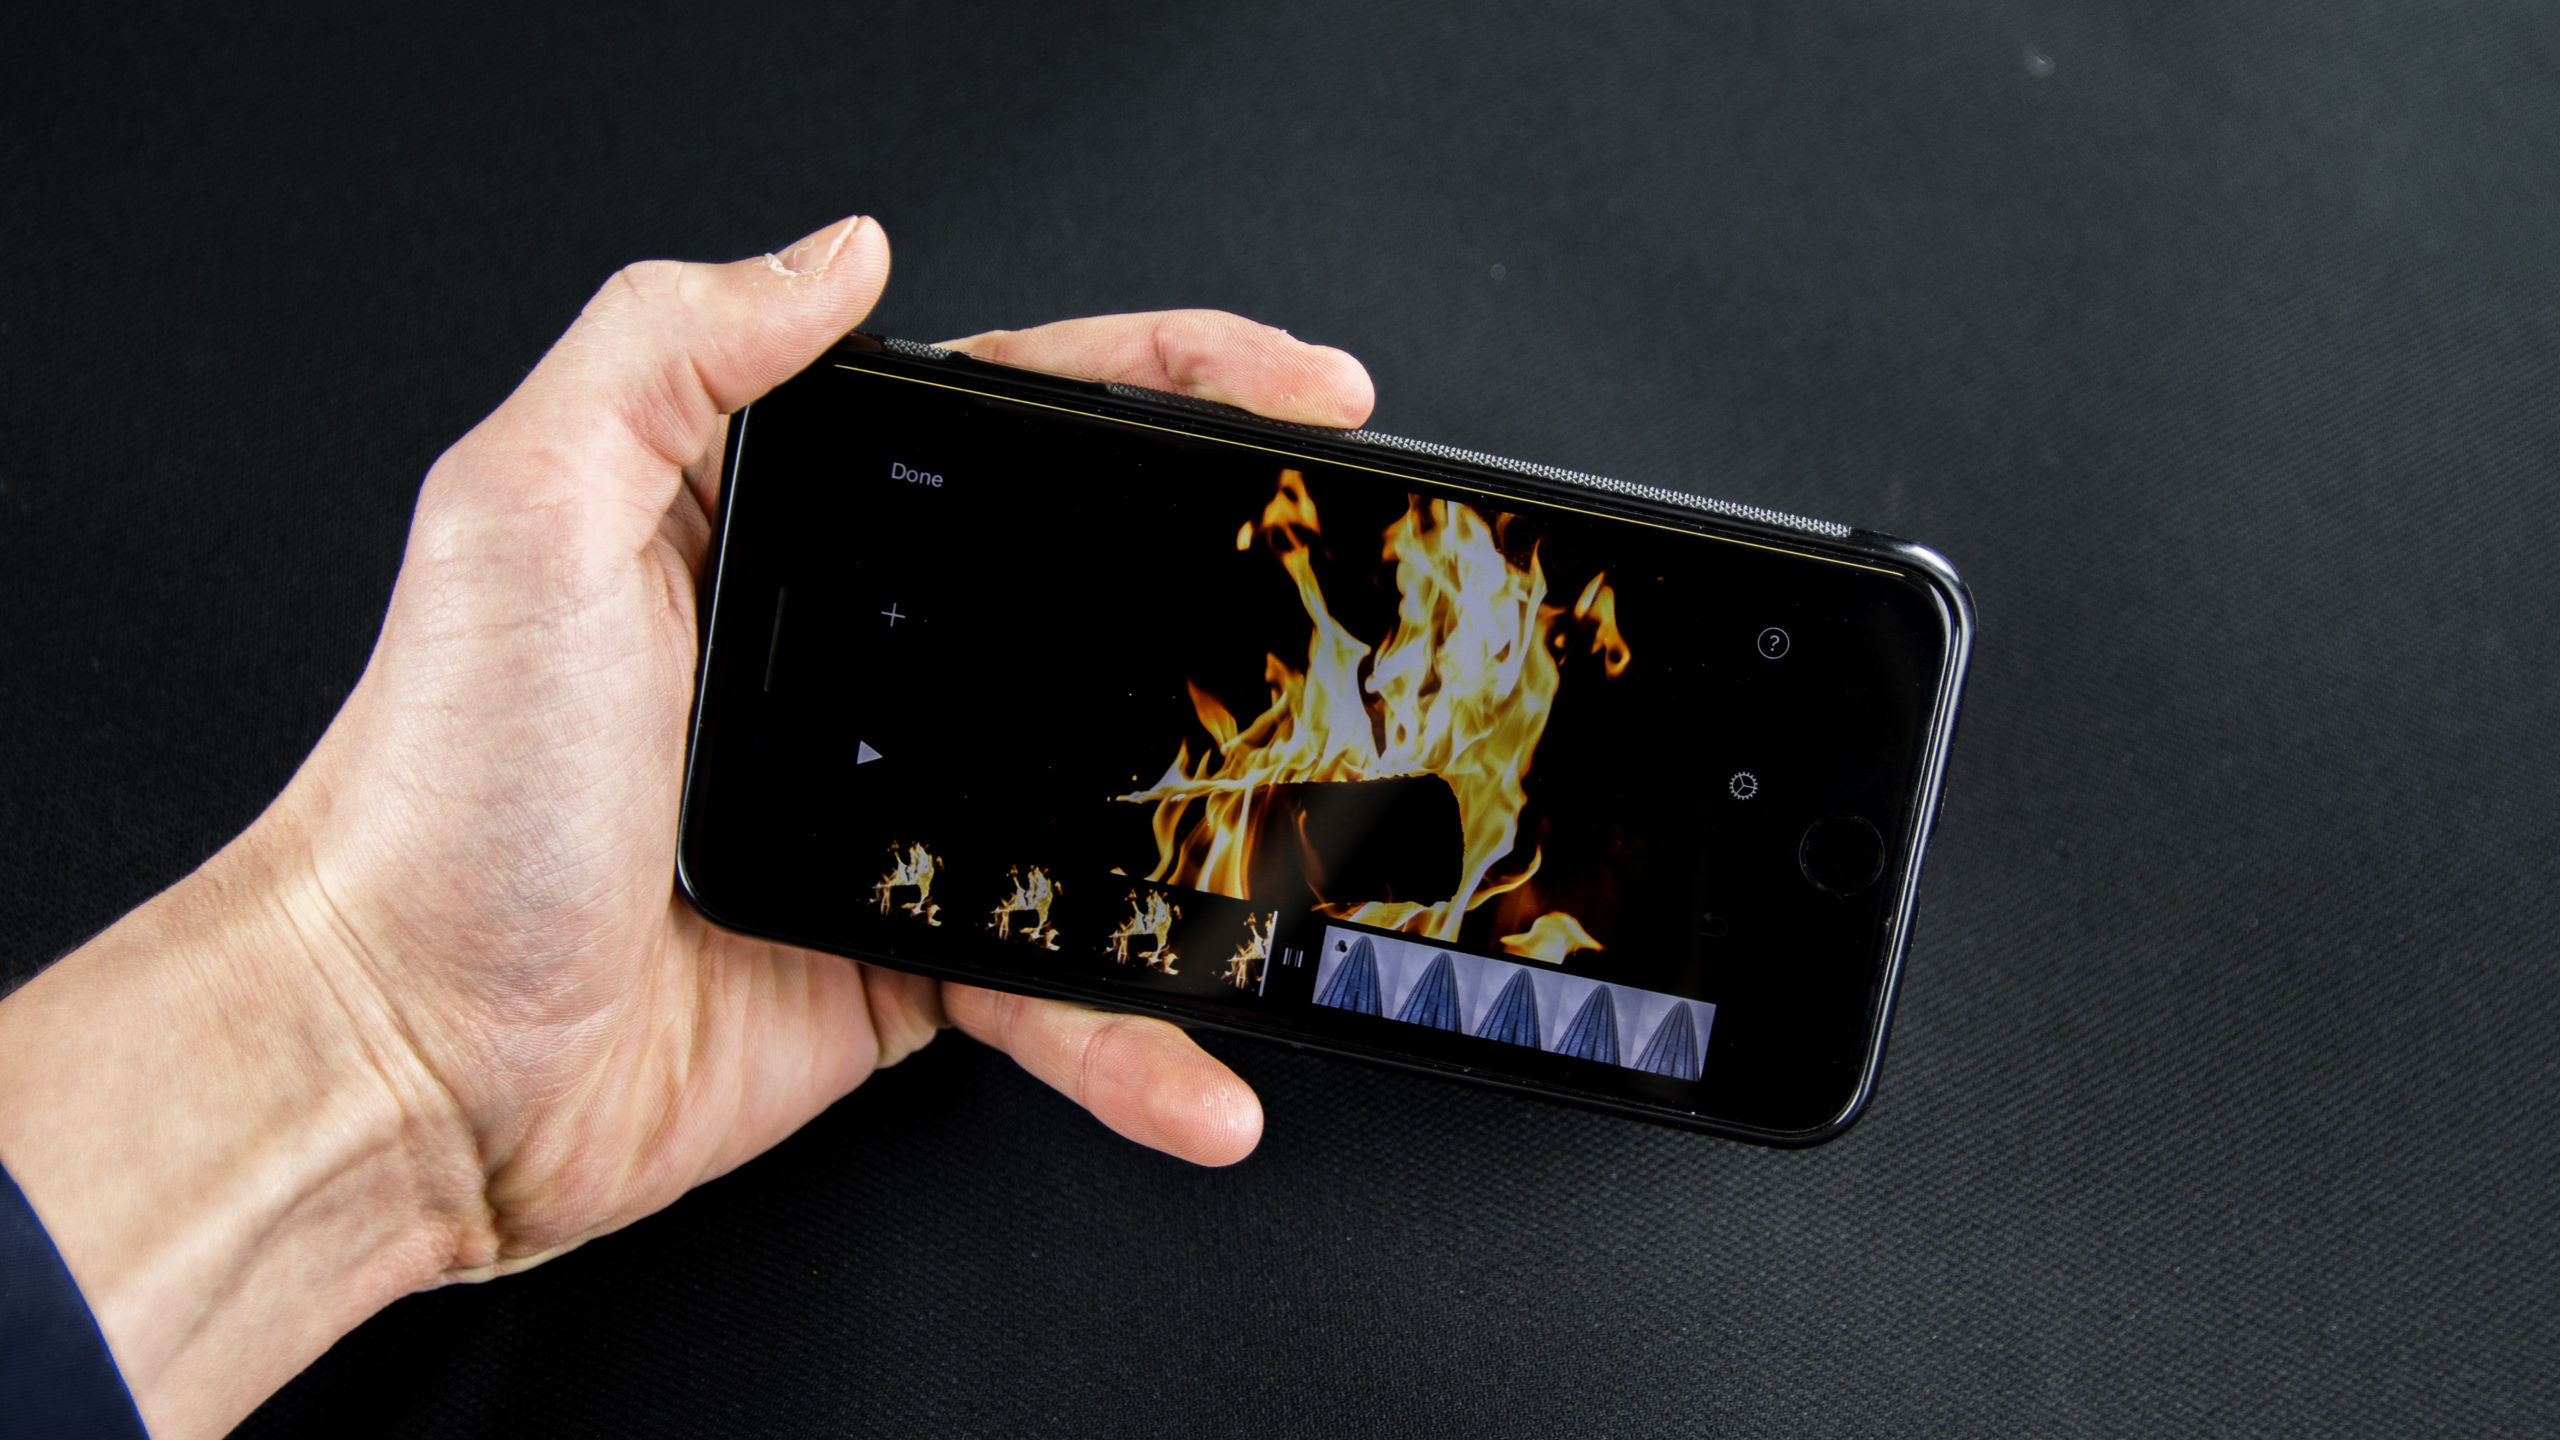 Telefon w ręce z odpaloną aplikacją do montowania filmów na IOS iMovie